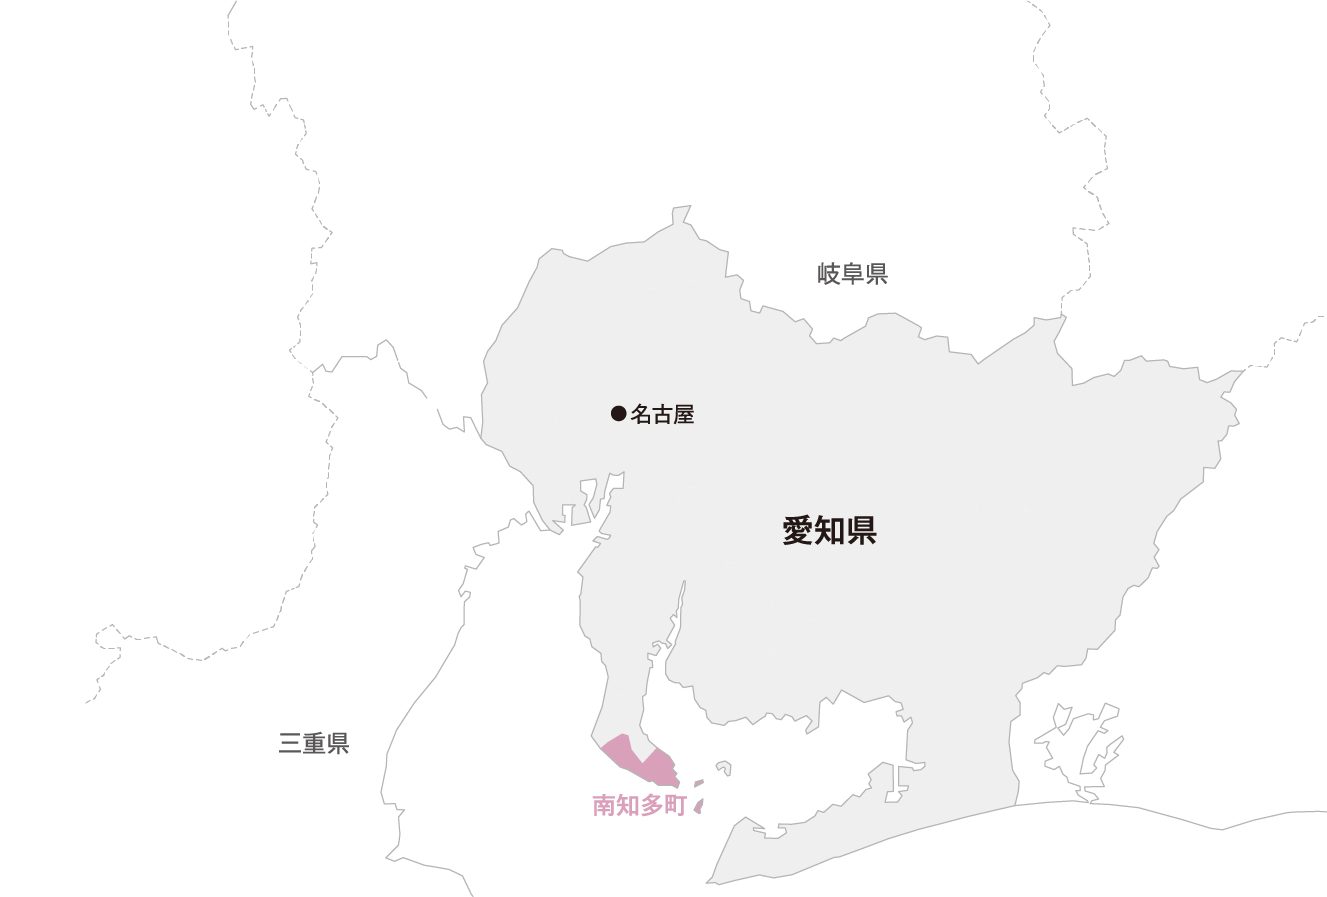 愛知県 南知多町マップ画像